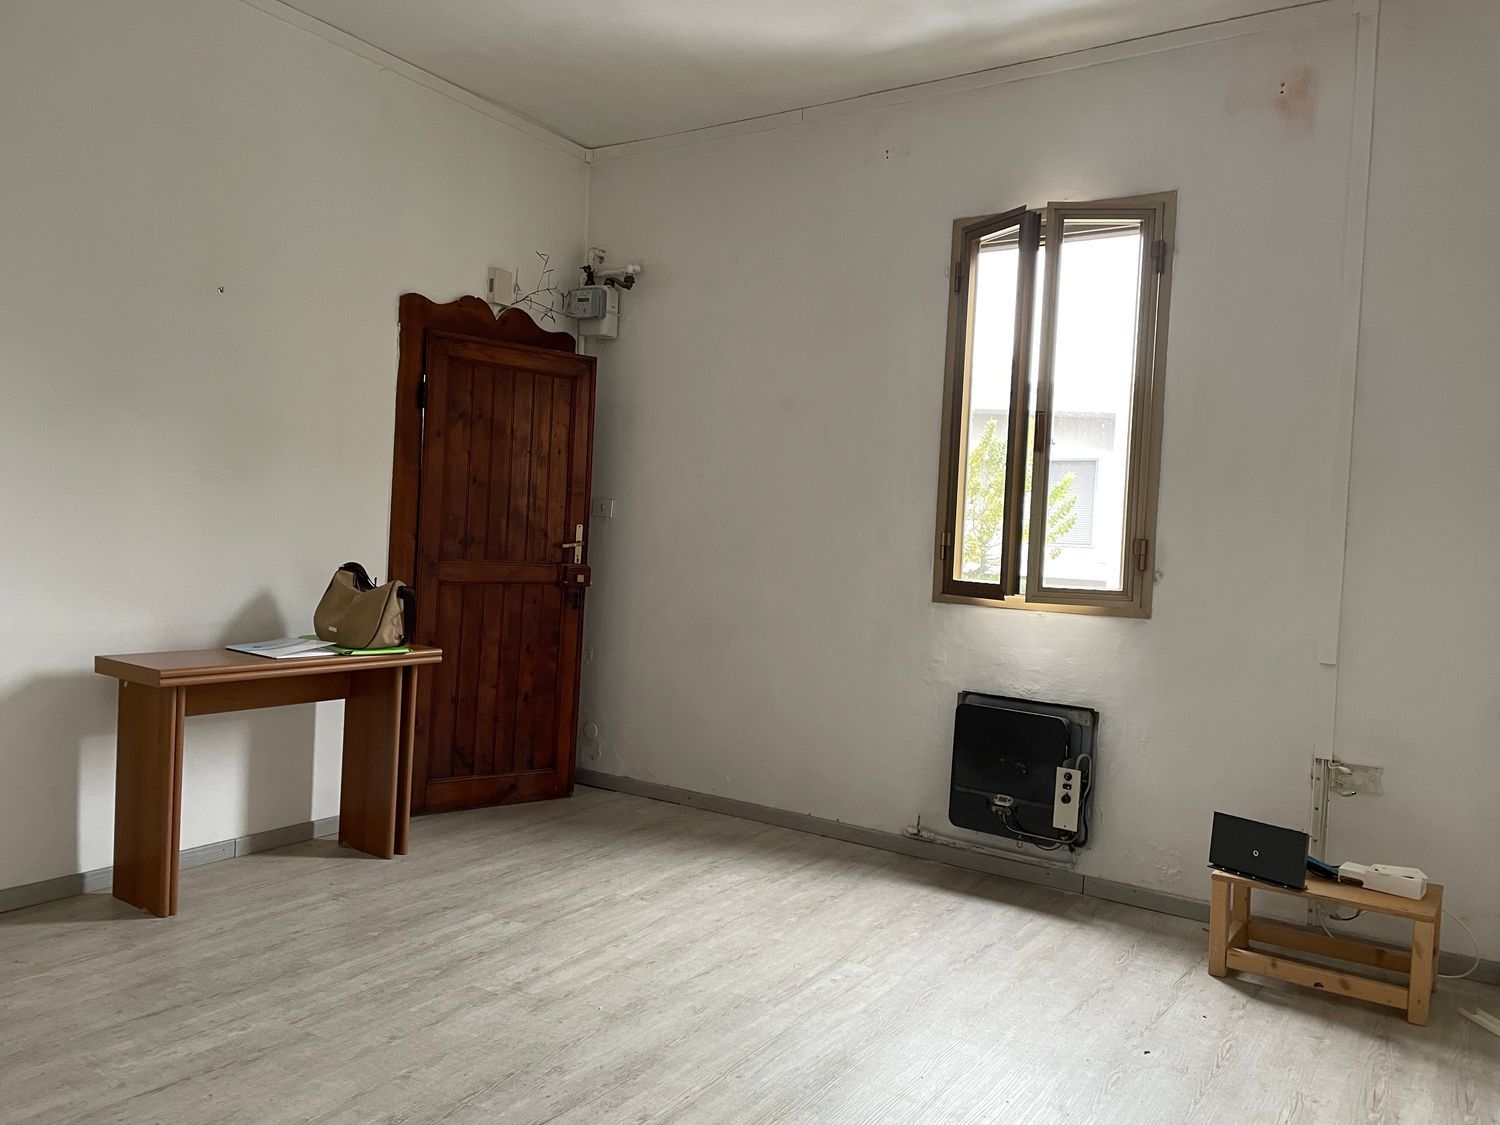 Appartamento in vendita a Sant'Agata Bolognese, 3 locali, prezzo € 70.000 | PortaleAgenzieImmobiliari.it